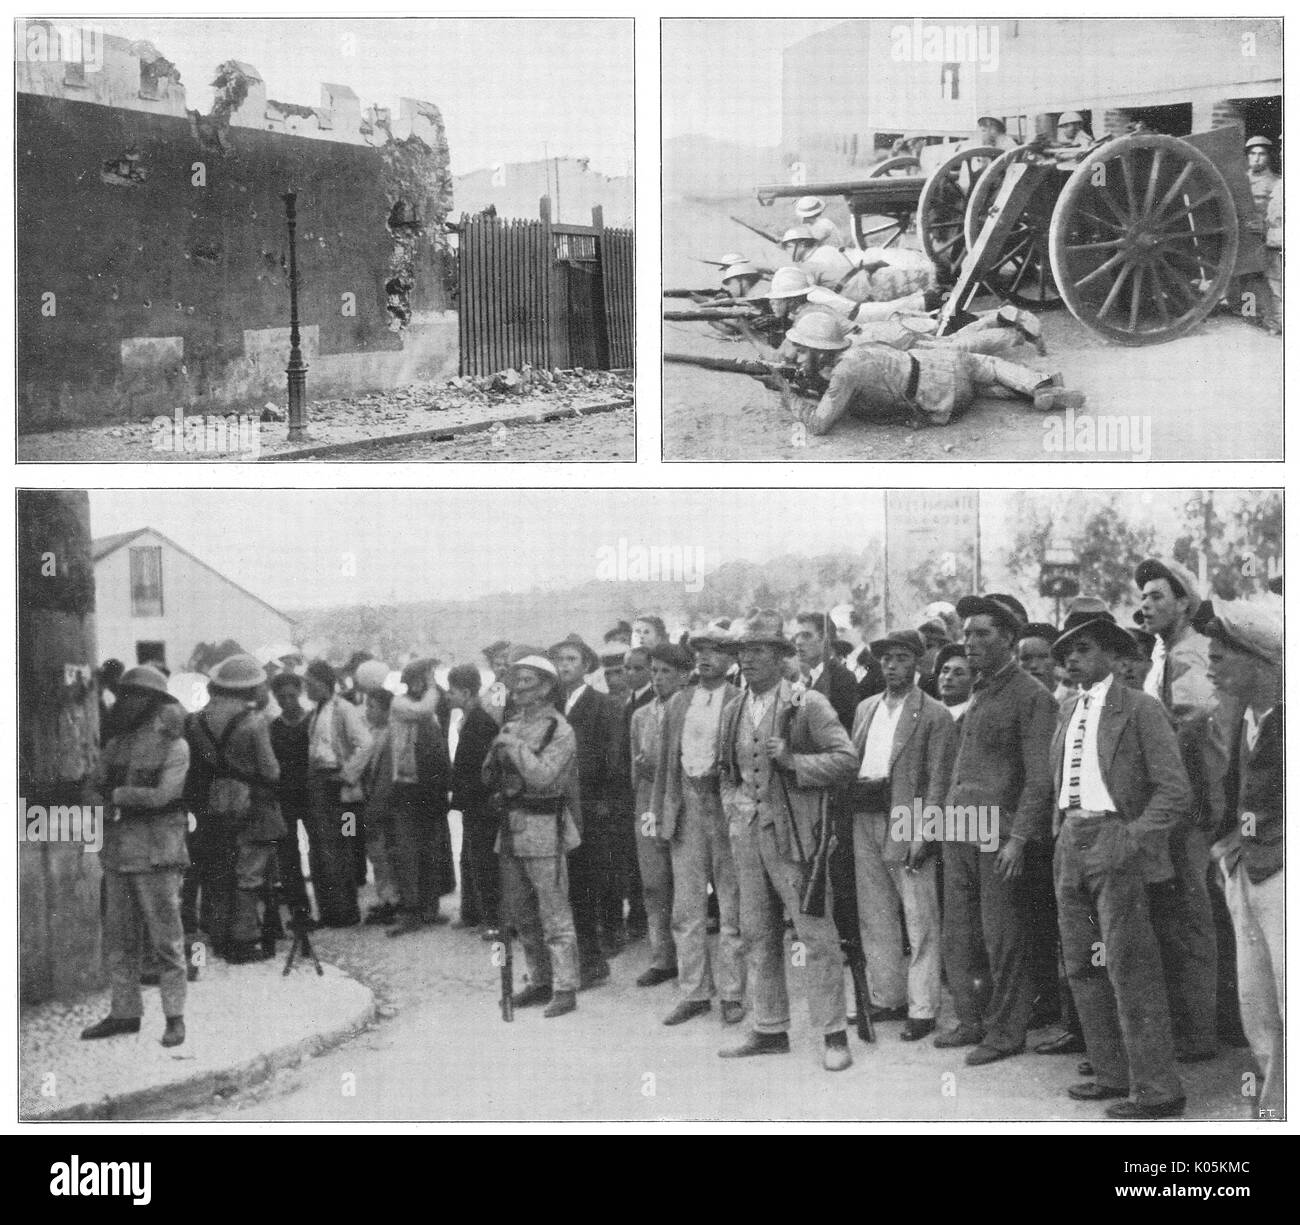 Acciones revolucionarias en Lisboa. (Parte superior izquierda) rebeldes atacan cuarteles. (Parte derecha superior), las fuerzas del gobierno de contraatacar. (Abajo) un grupo de los rebeldes. Fecha: 26 de agosto de 1931 Foto de stock